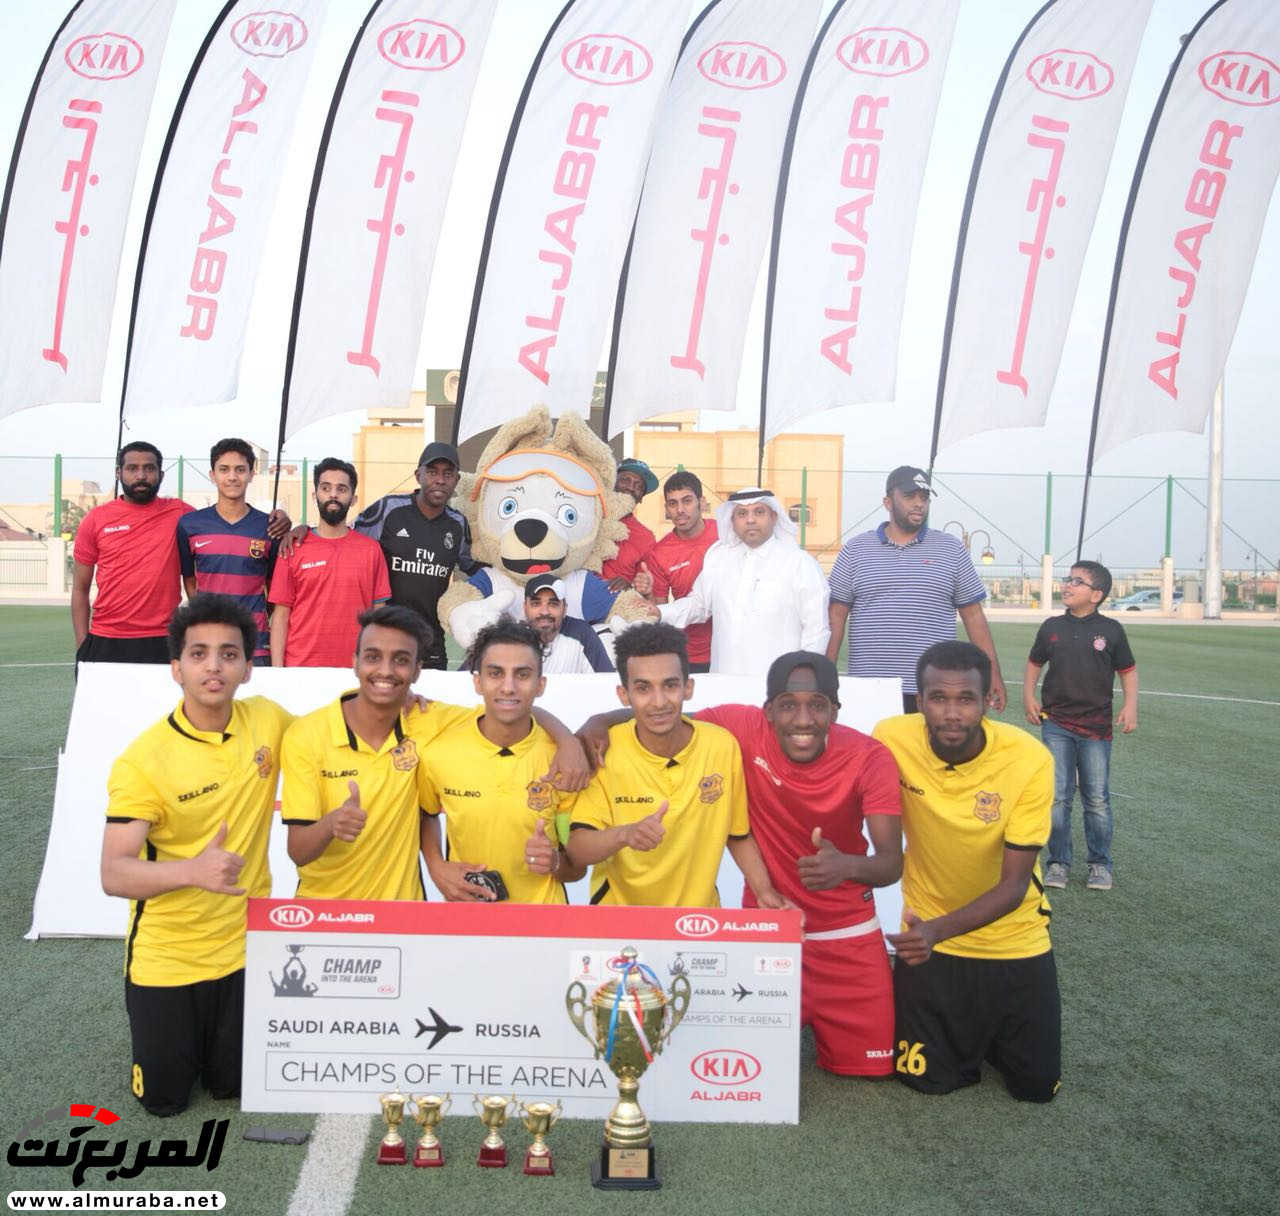 بطولة كيا الجبر لخماسيات كرة القدم تنطلق مجددا في نسختها العاشرة بالمملكة 9